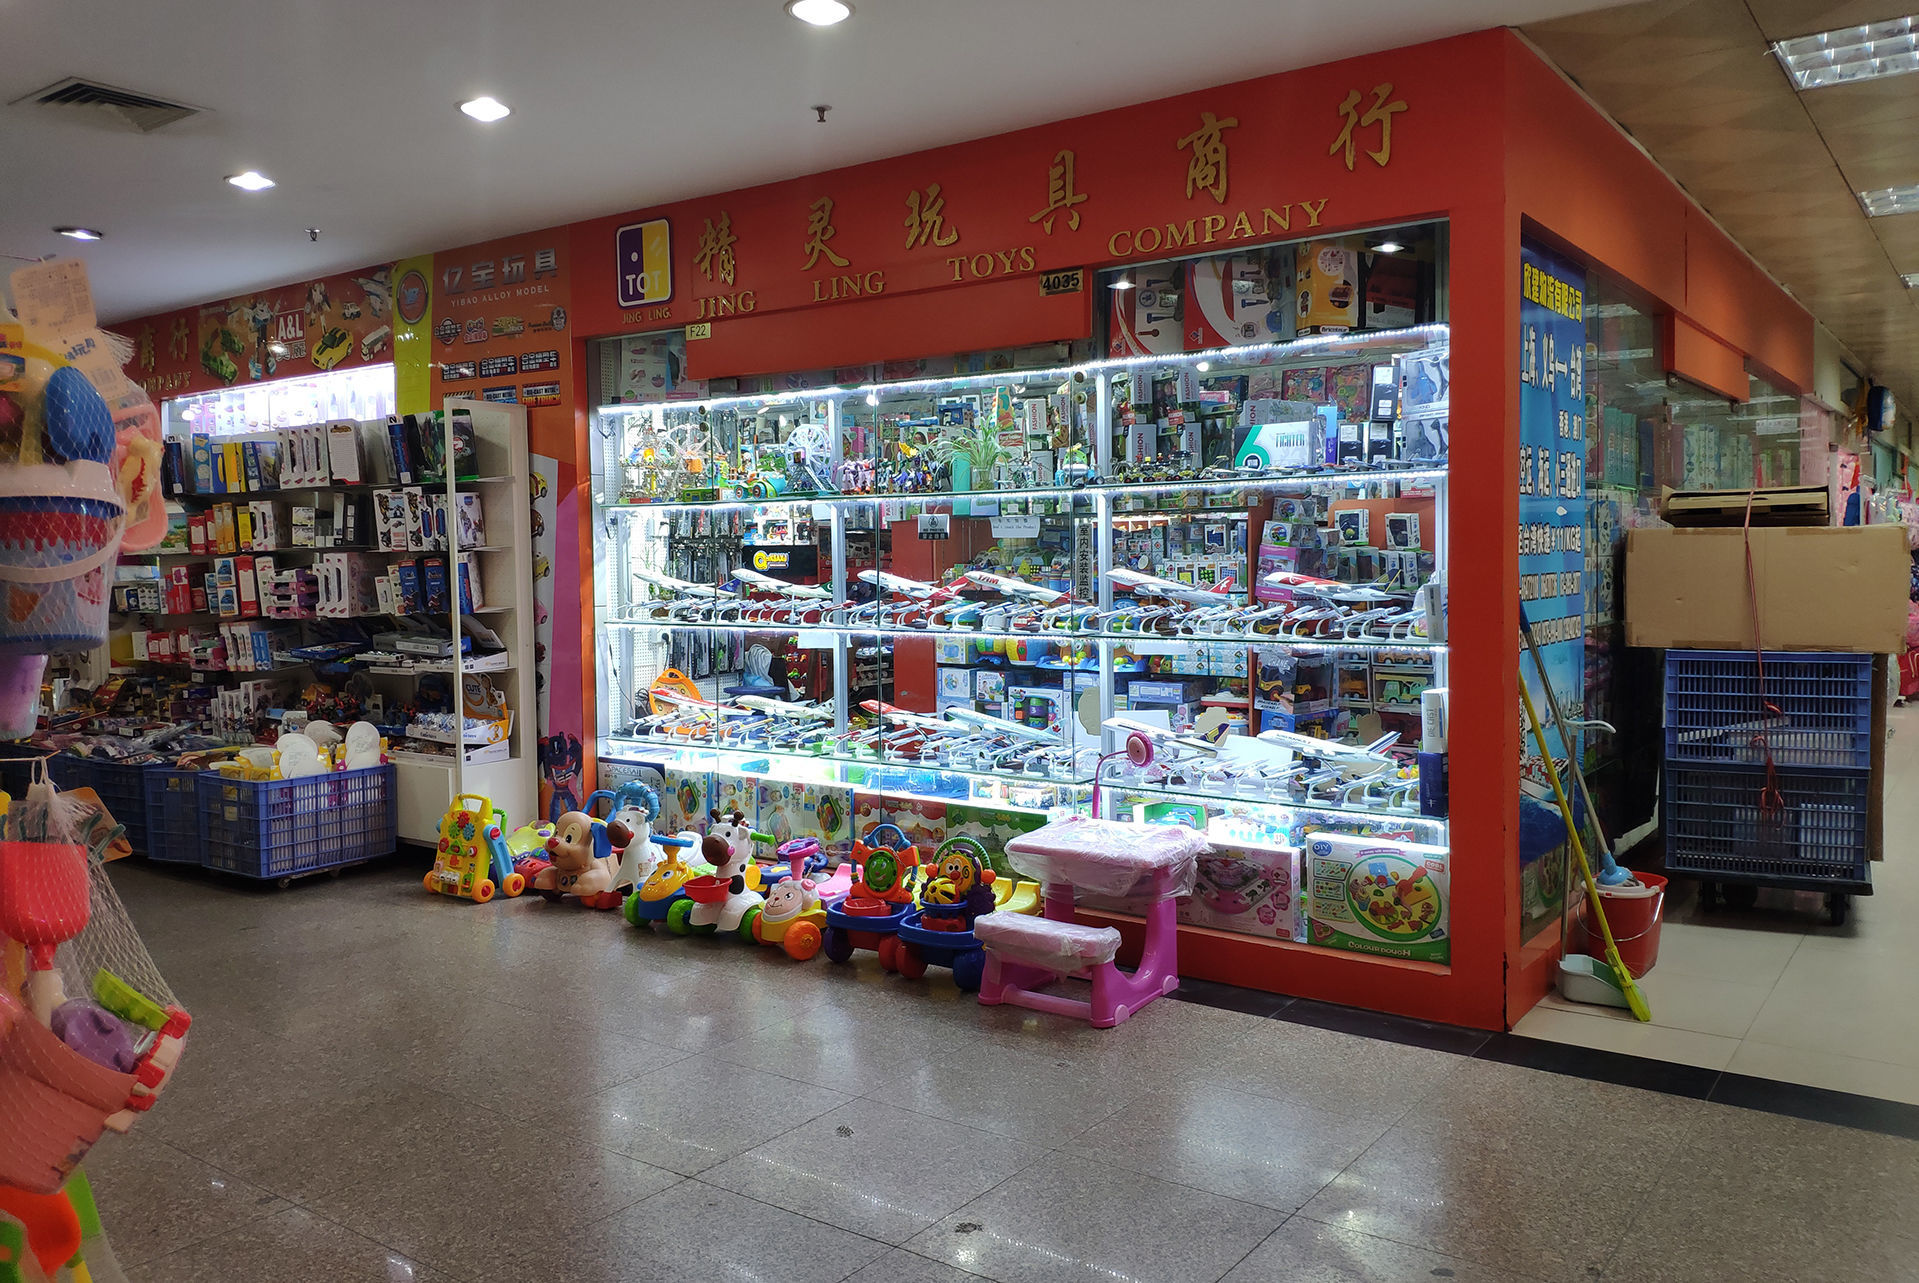 บรรยากาศตลาดขายของเล่นในกวางโจว มีร้านค้าขายของมากมาย